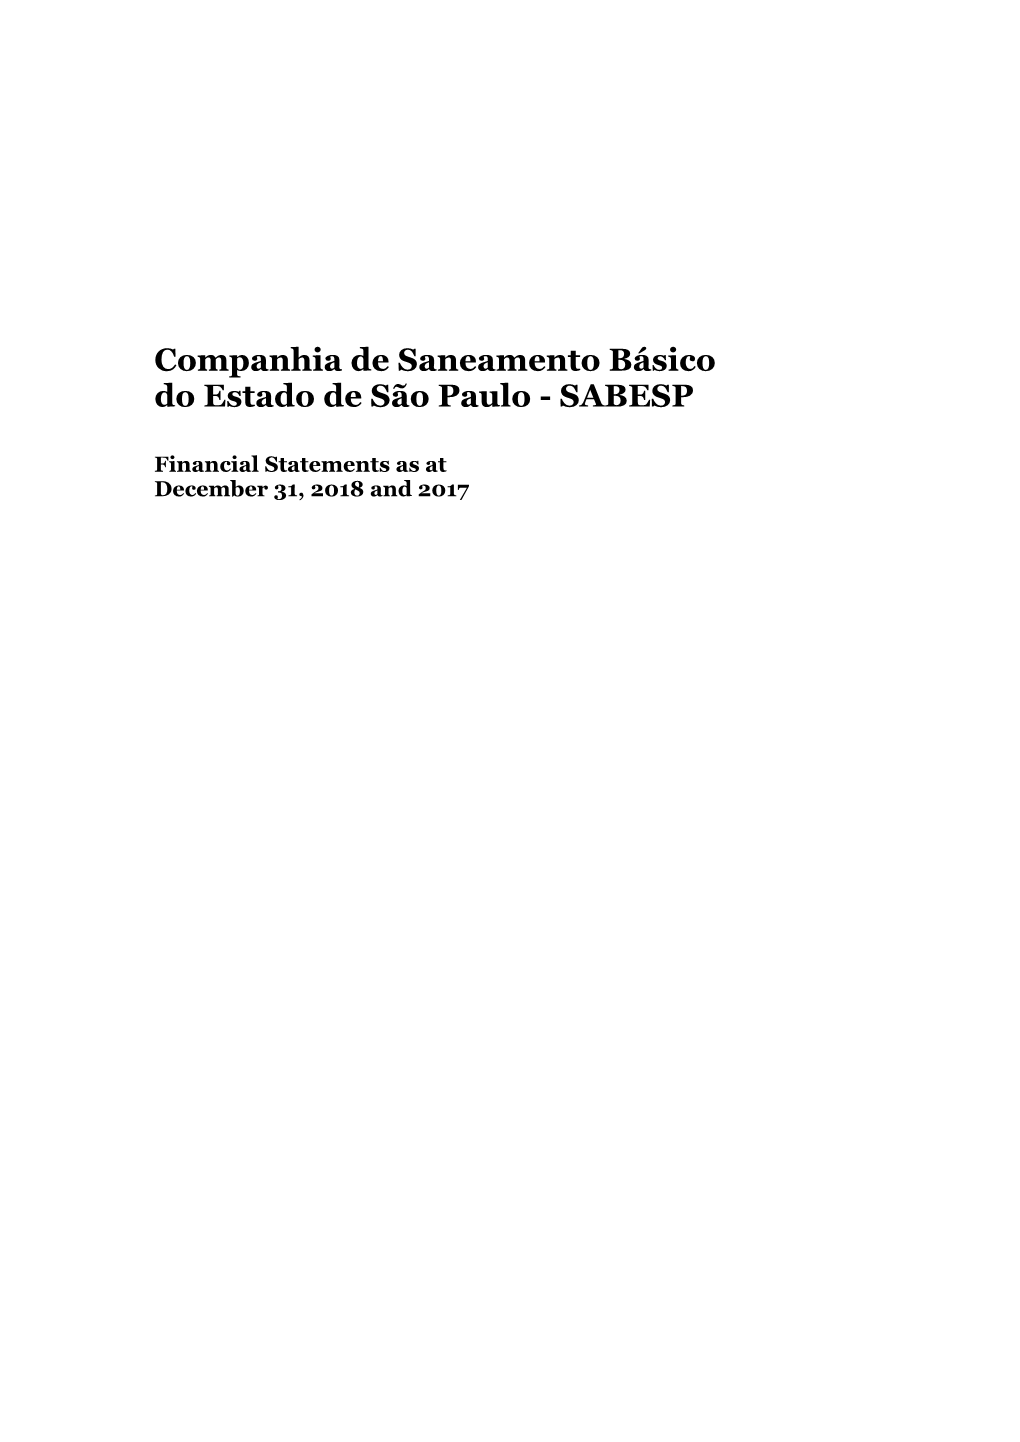 Companhia De Saneamento Básico Do Estado De São Paulo - SABESP